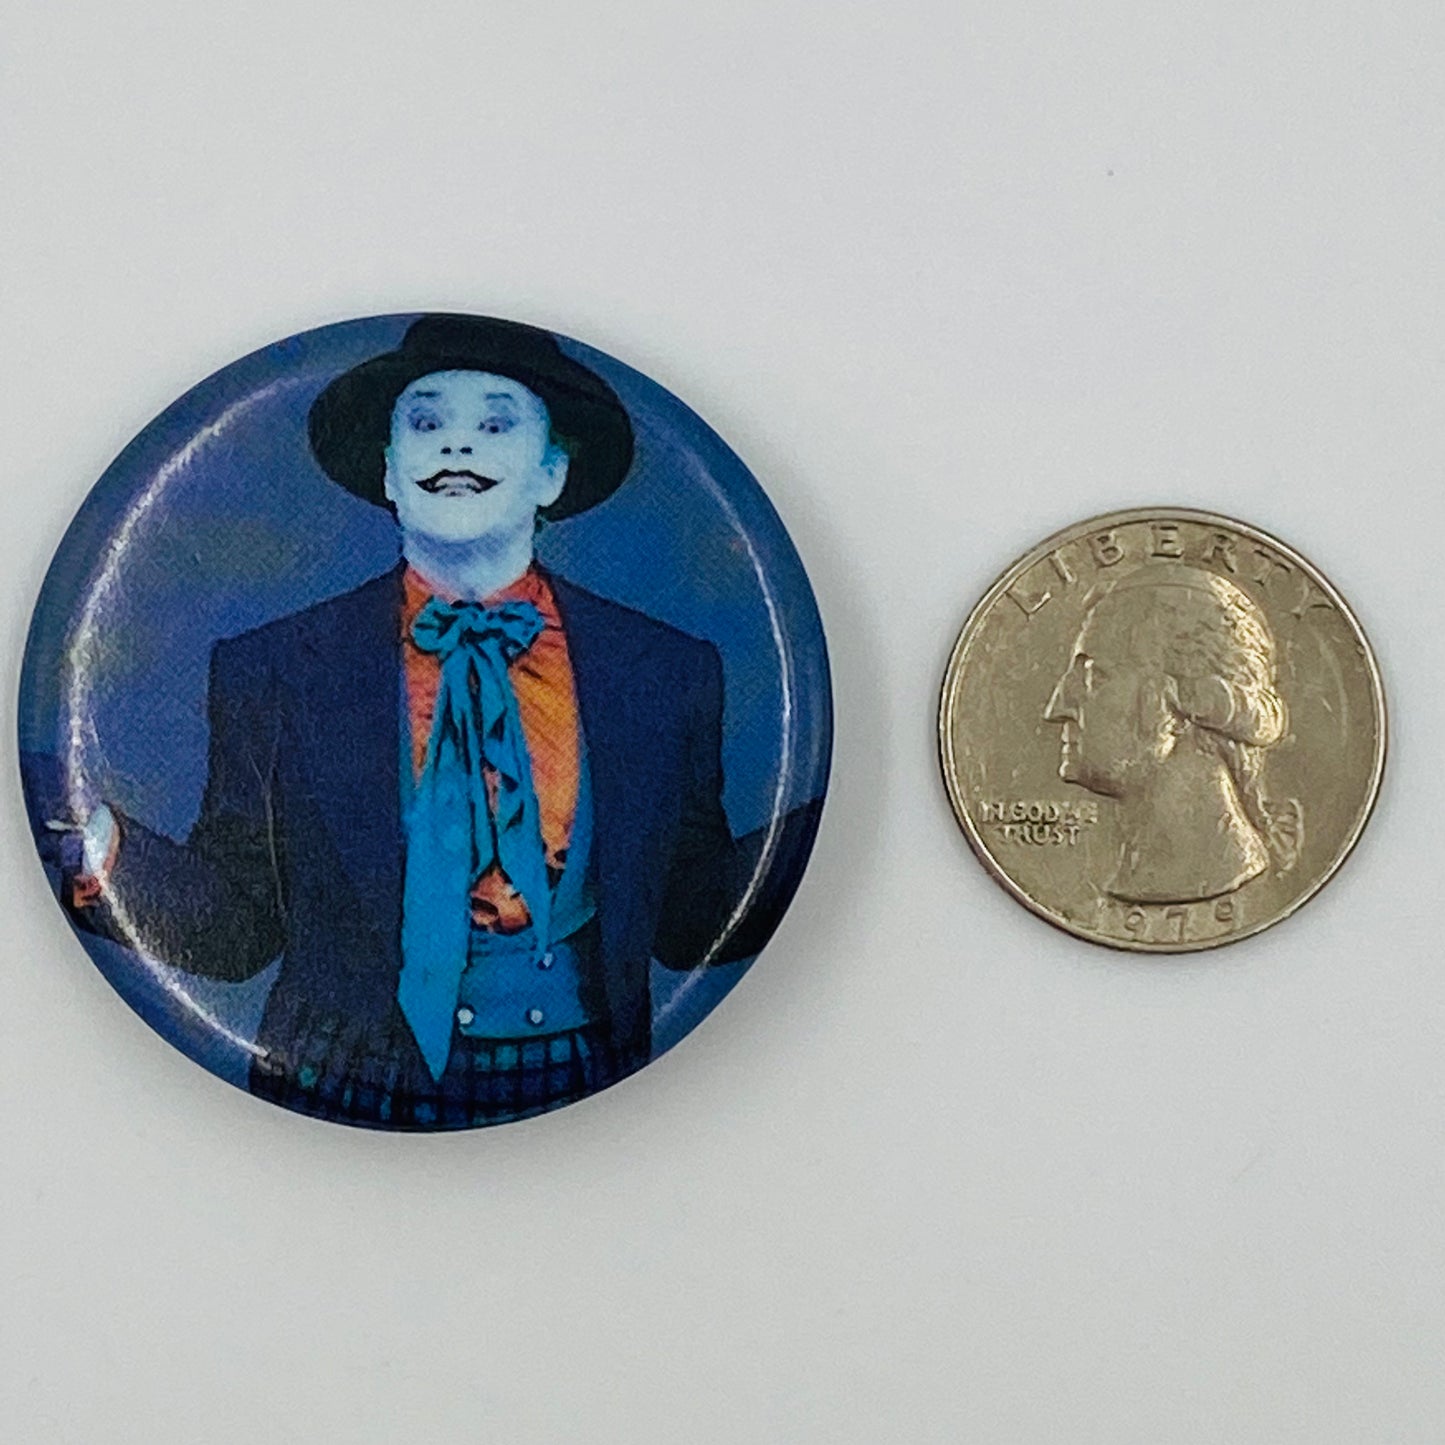 Batman '89 Here’s Joker! pinback button (1989)